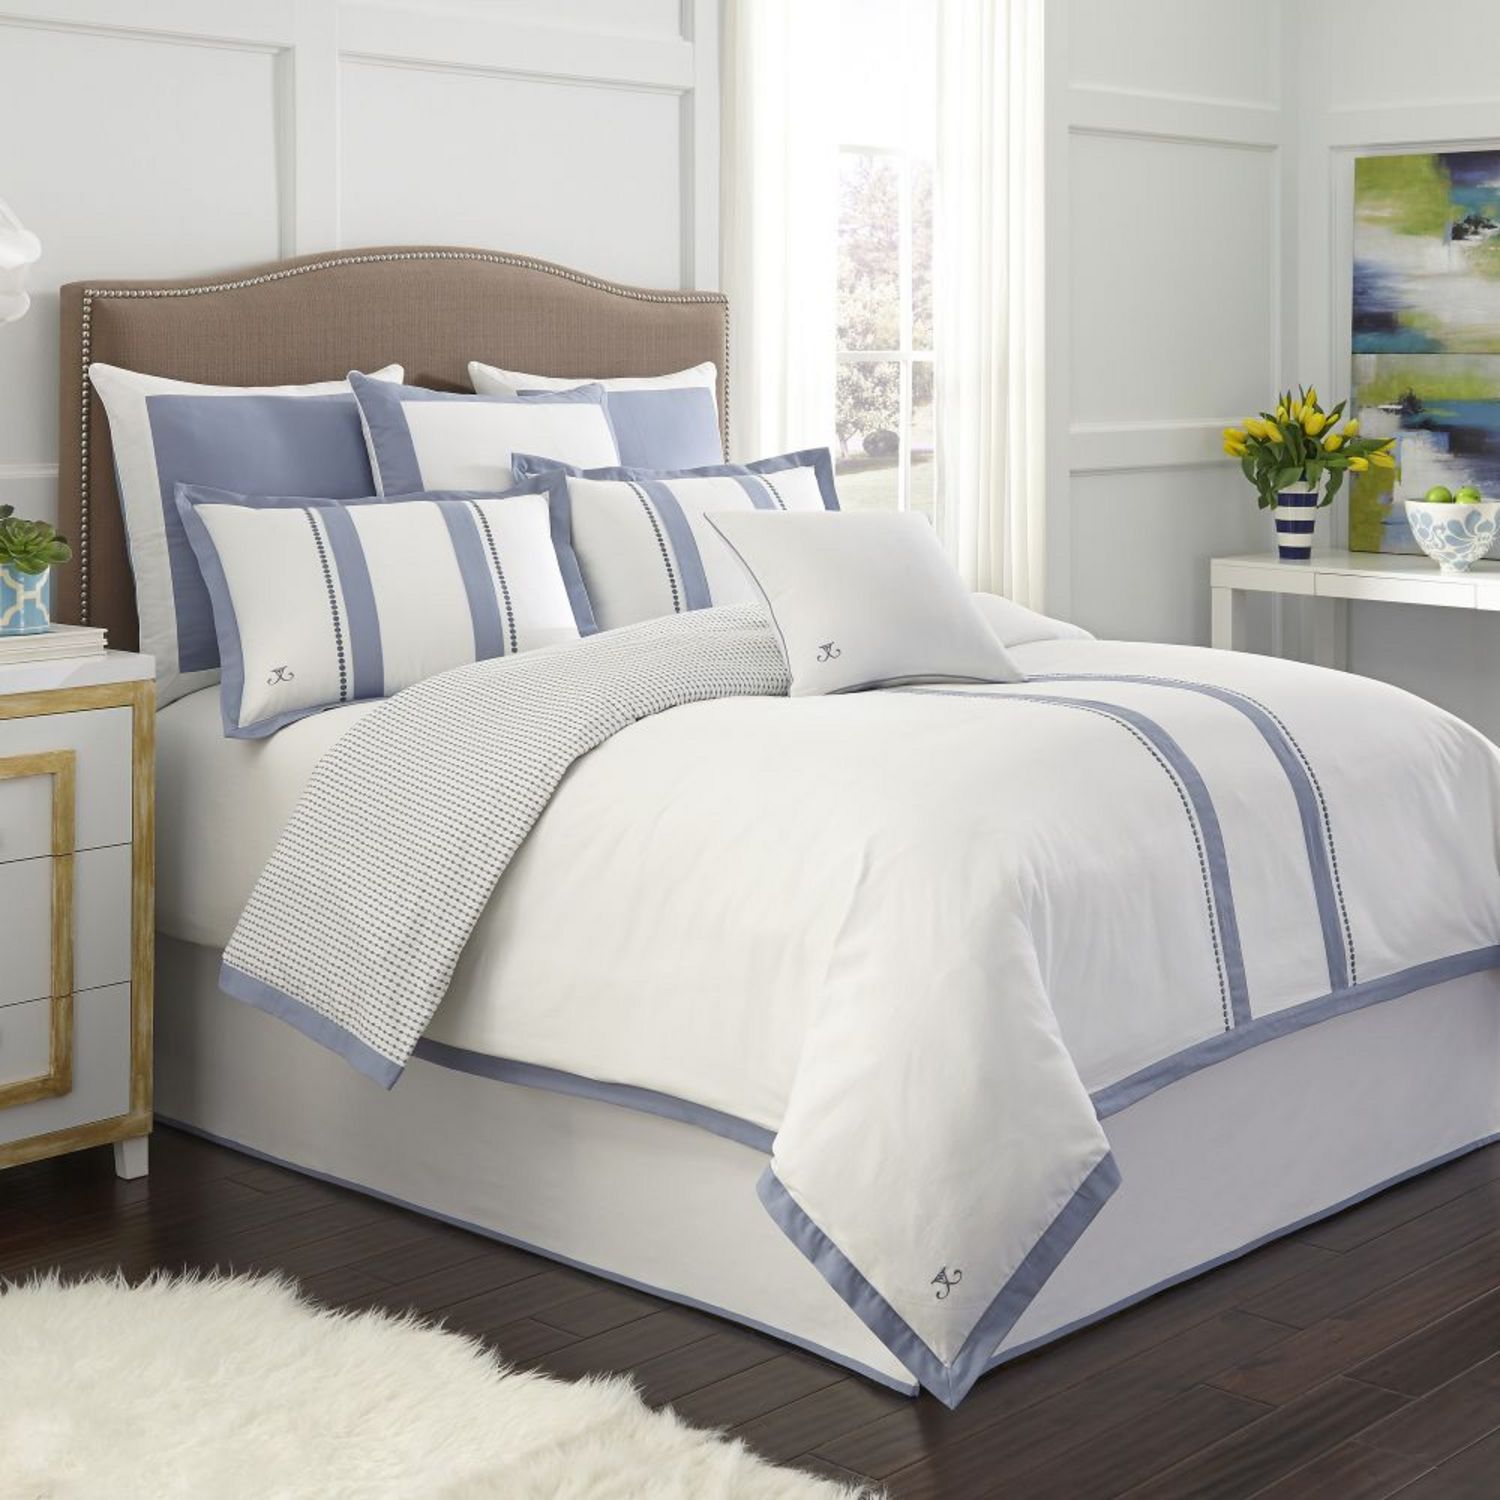 London Blue Comforter Set - Full - BeddingSuperStore.com